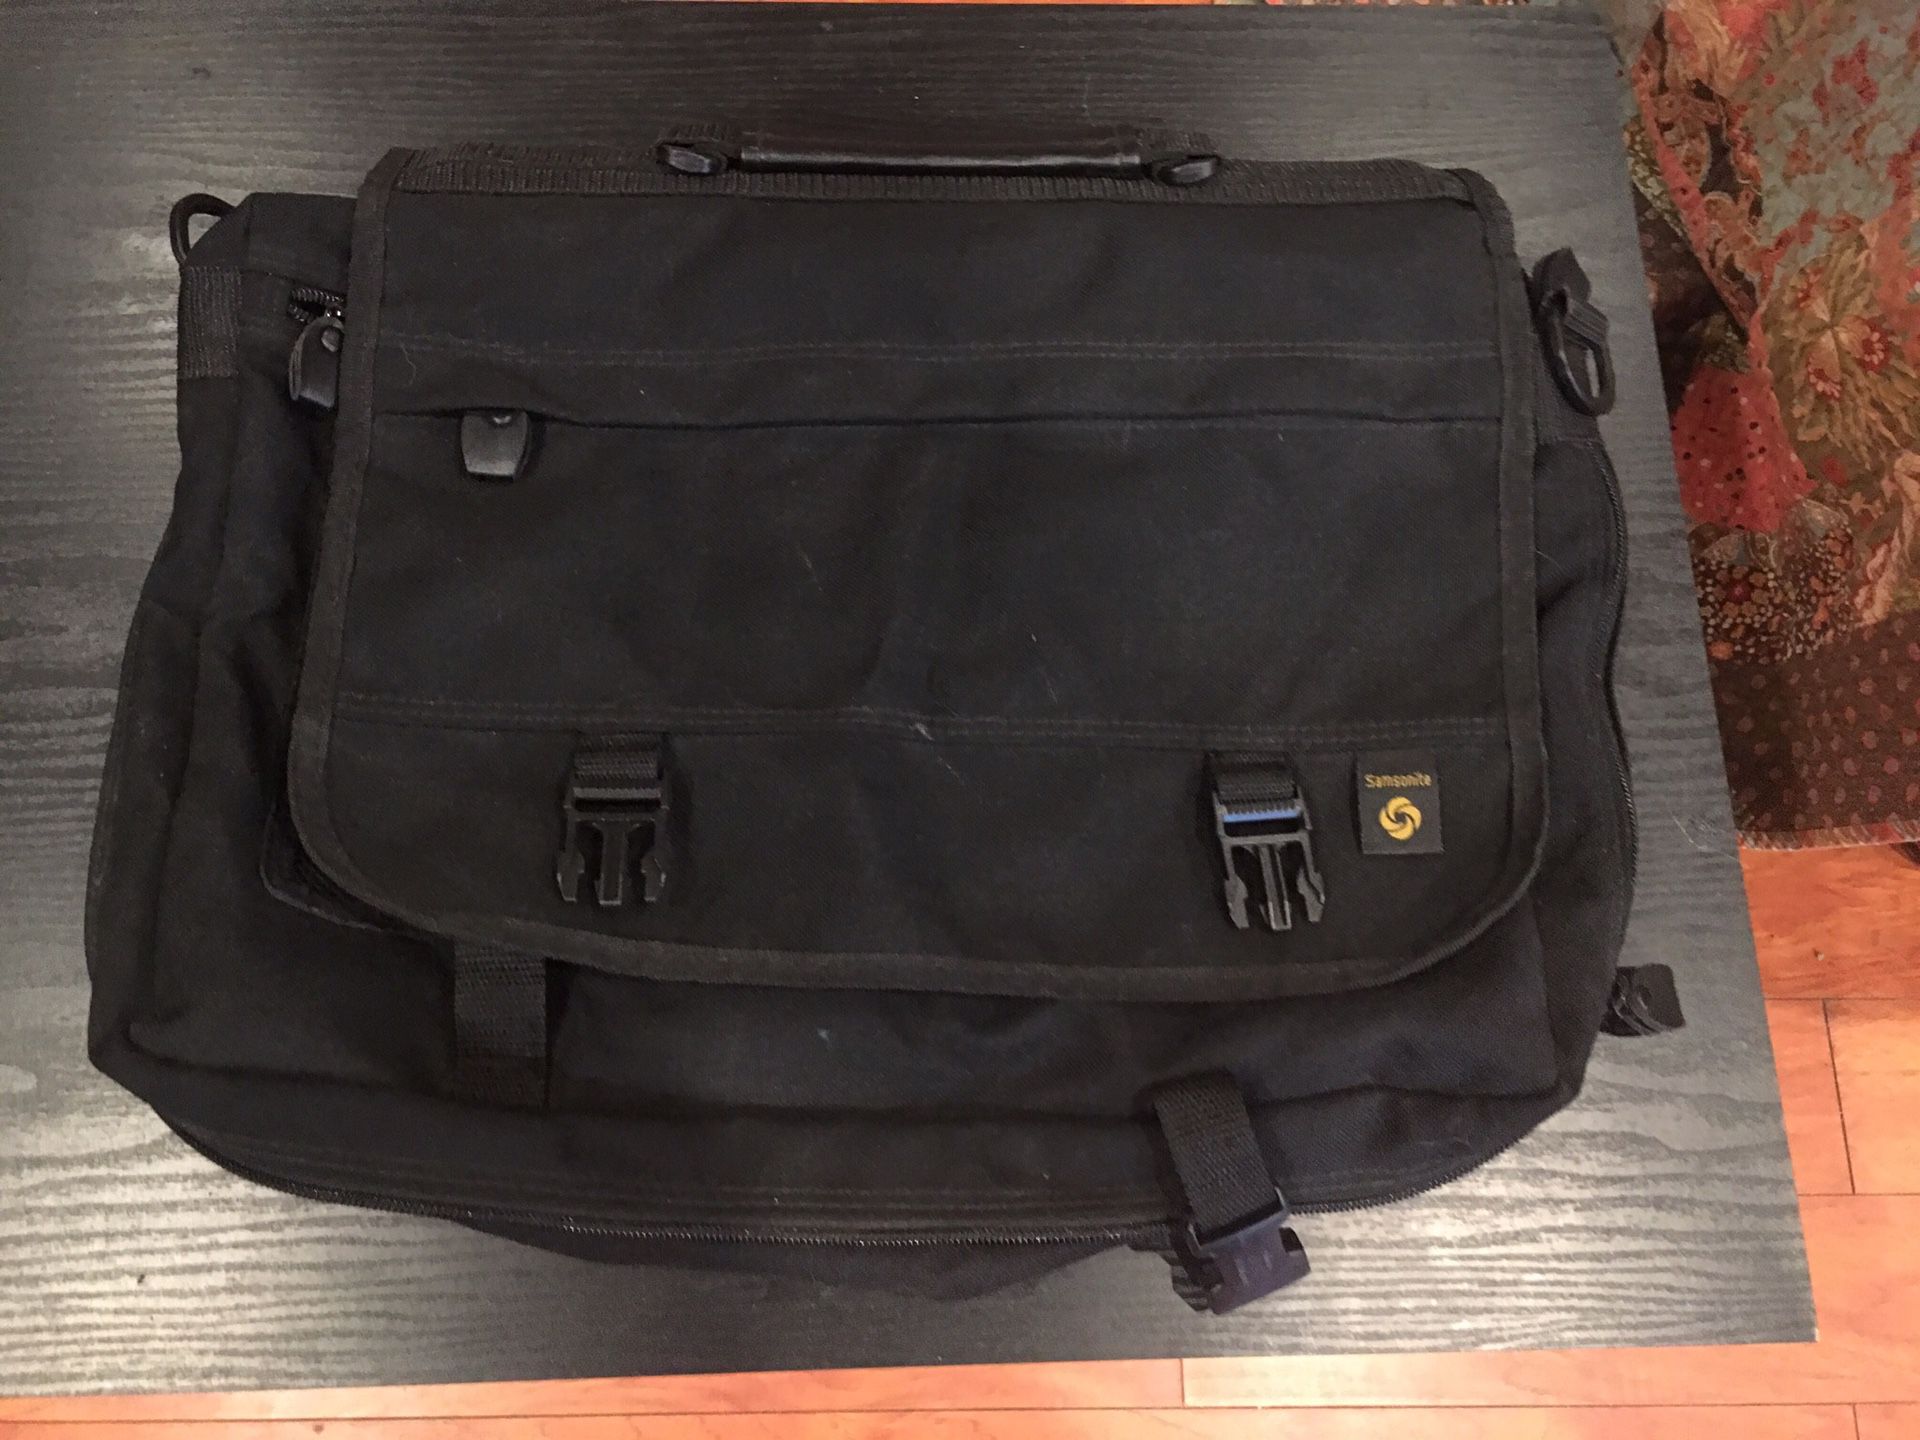 Samsonite laptop bag - $5